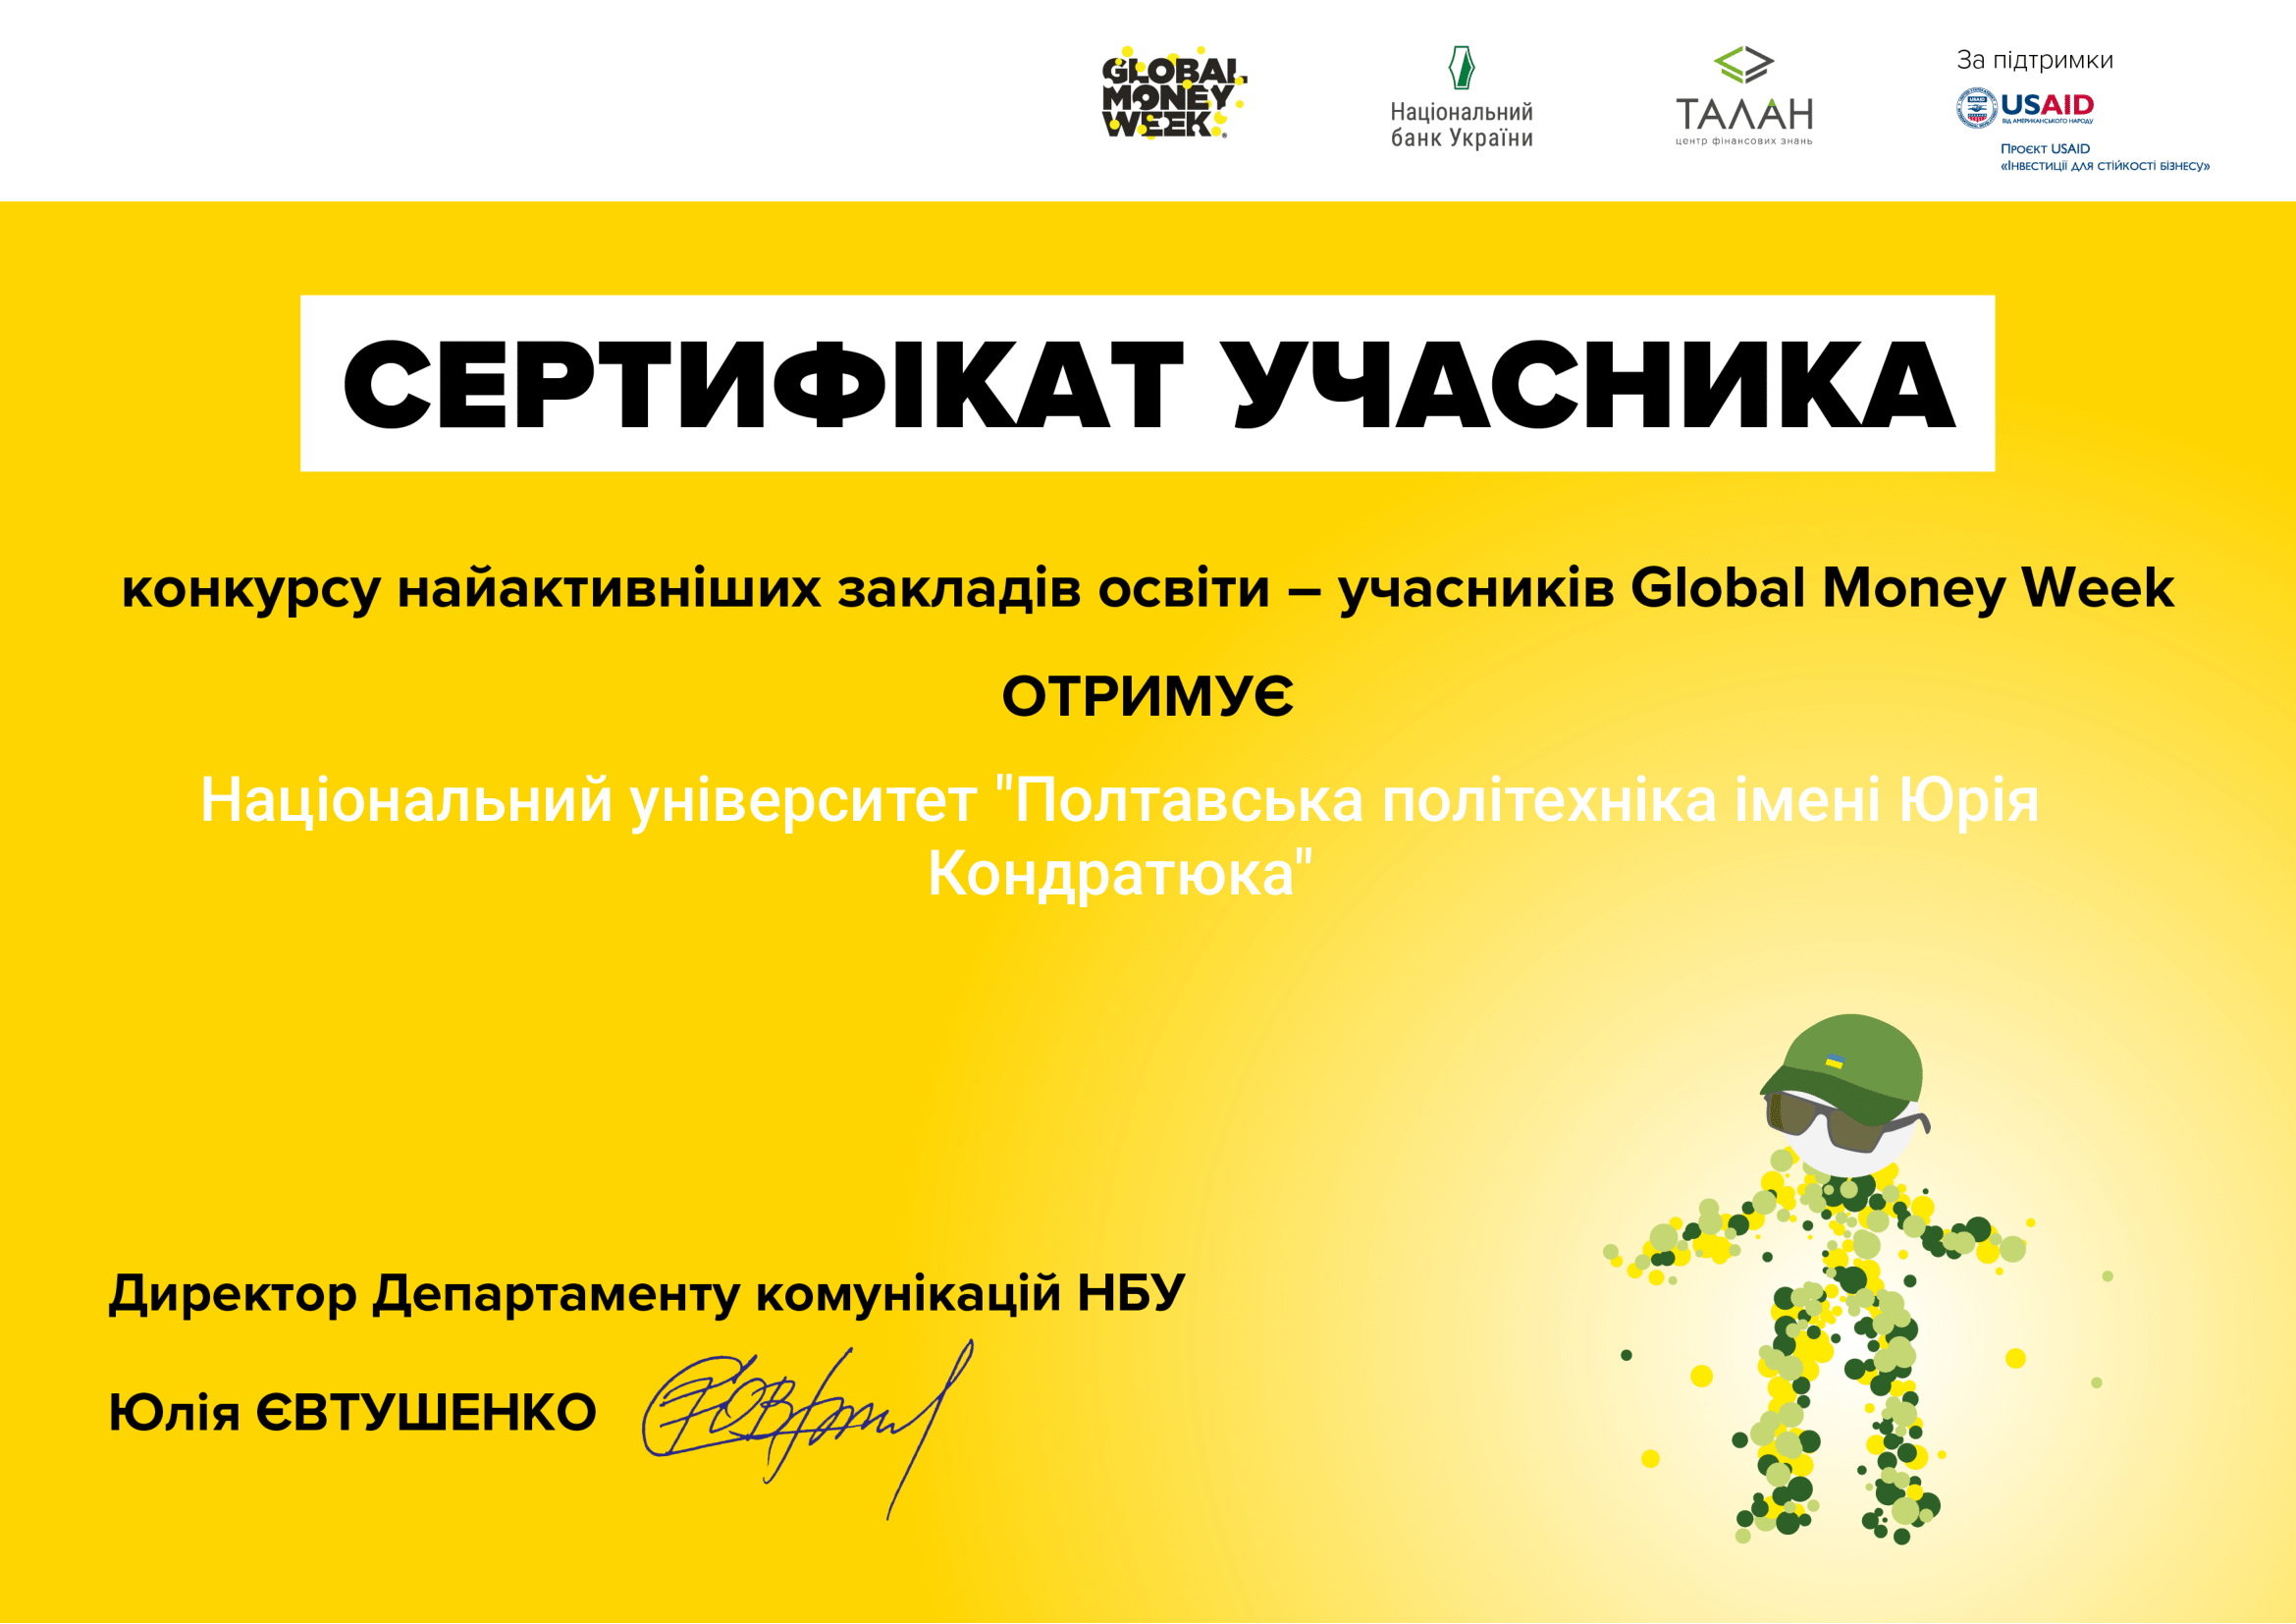 Політехніка отримала відзнаку Національного банку України за активну участь у Всесвітньому тижні грошей